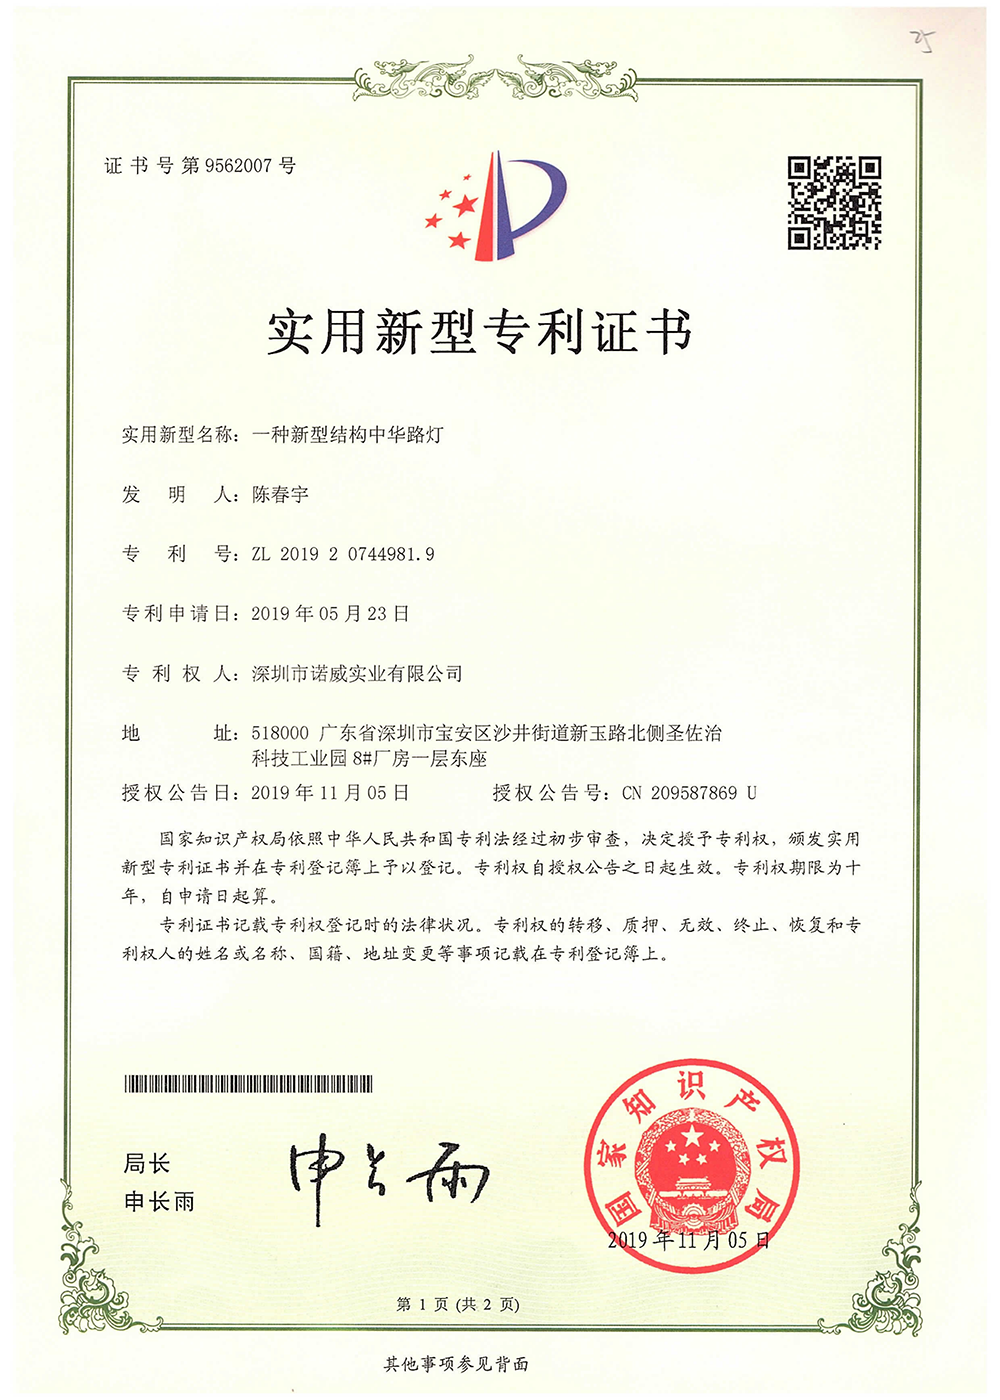 New China Light Patent